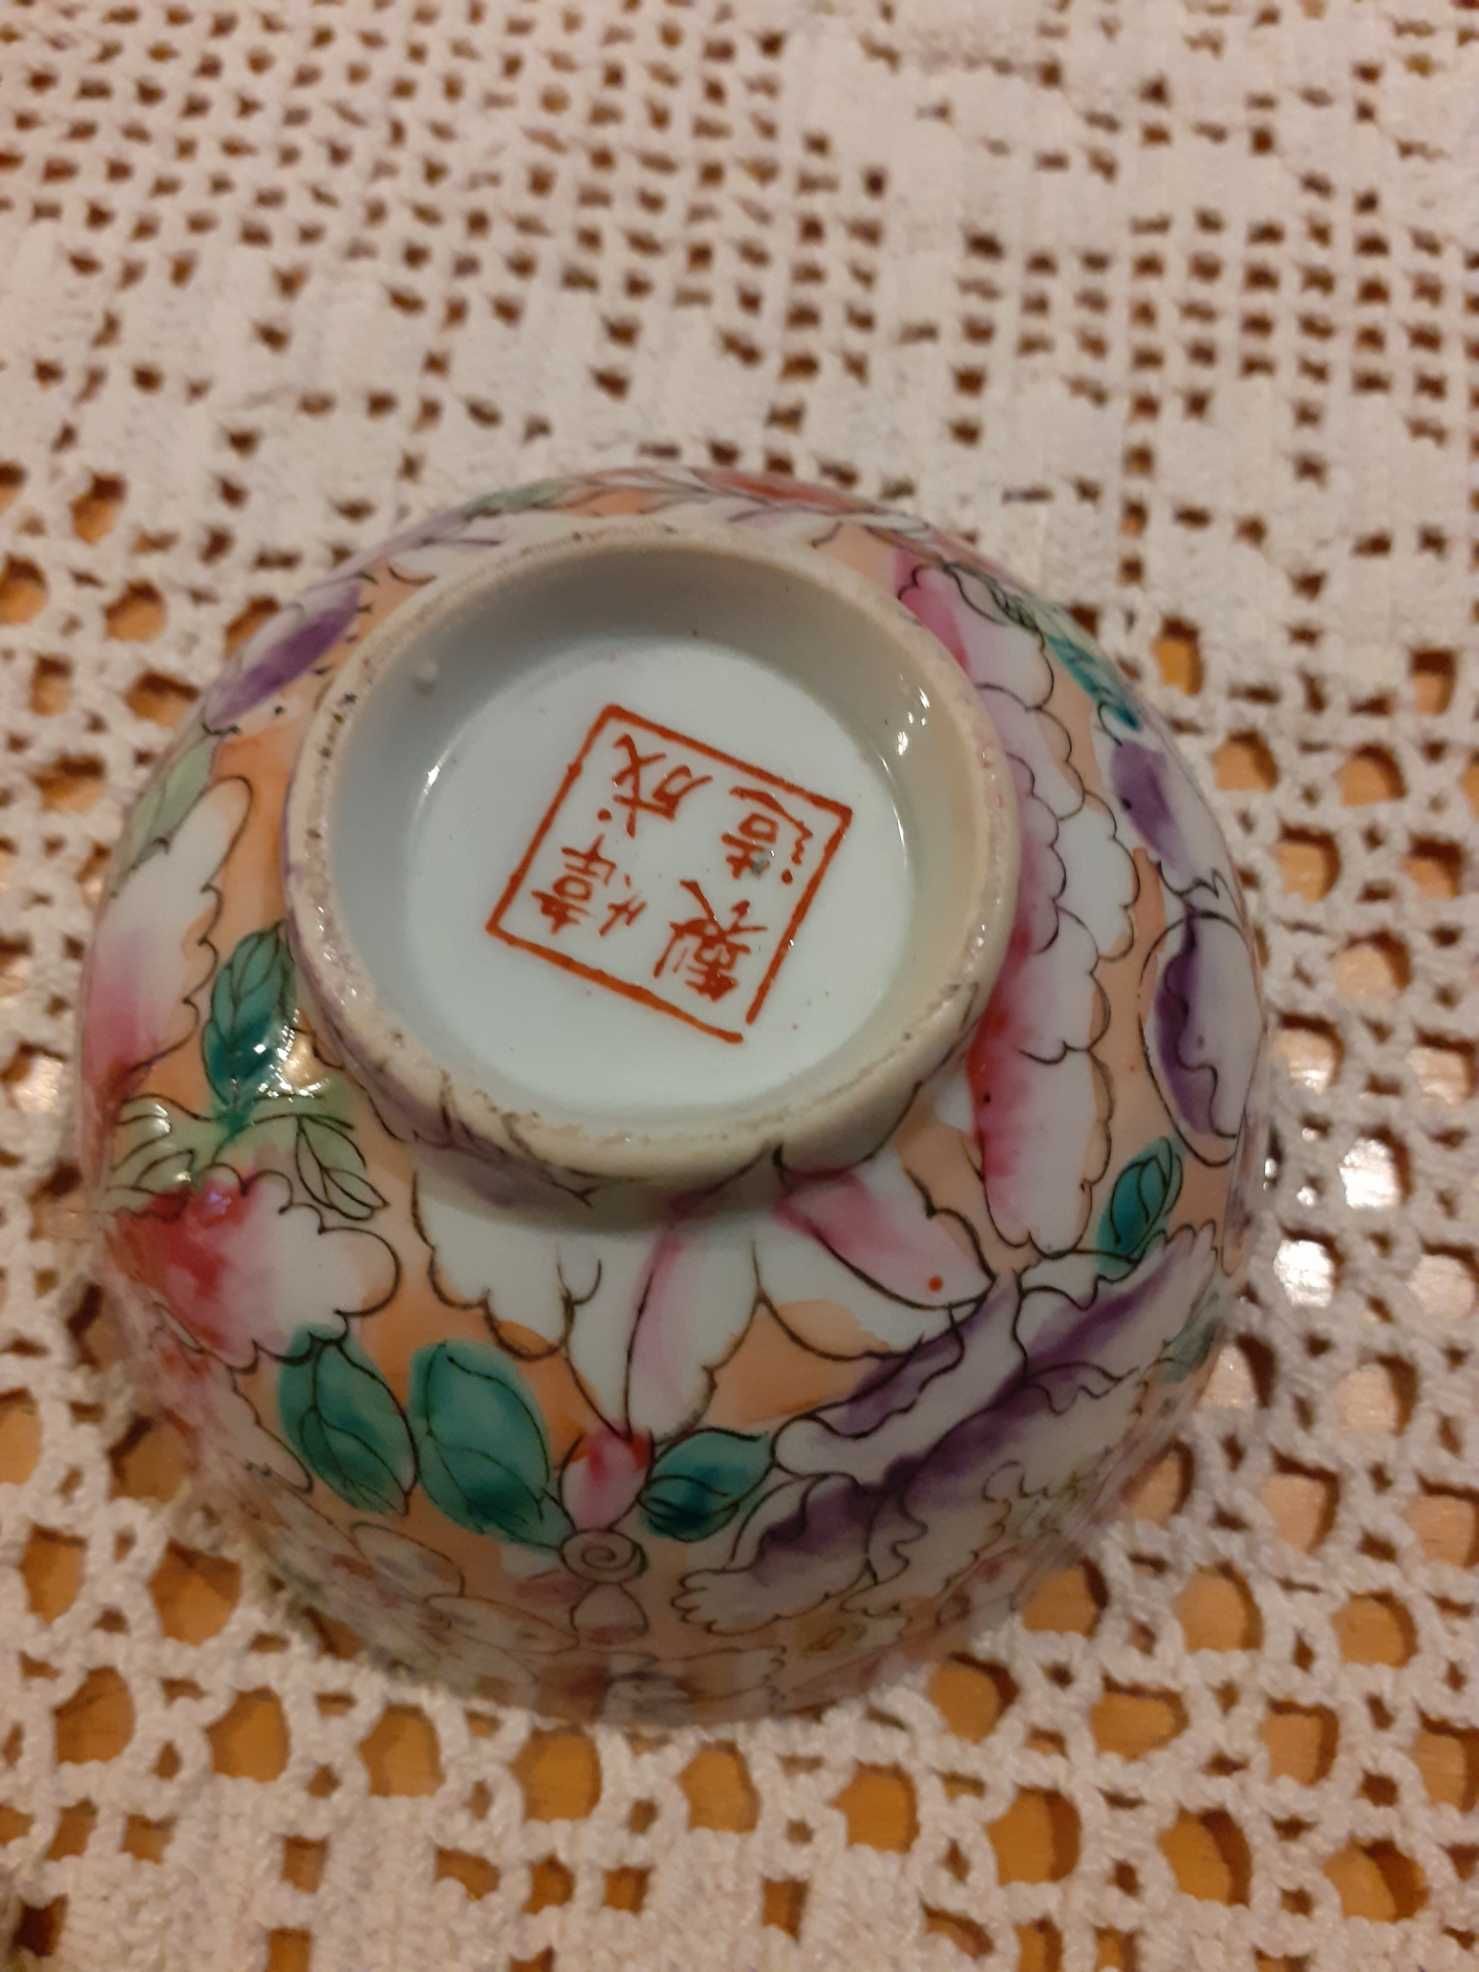 Porcelana Chinesa. Preços na descrição.